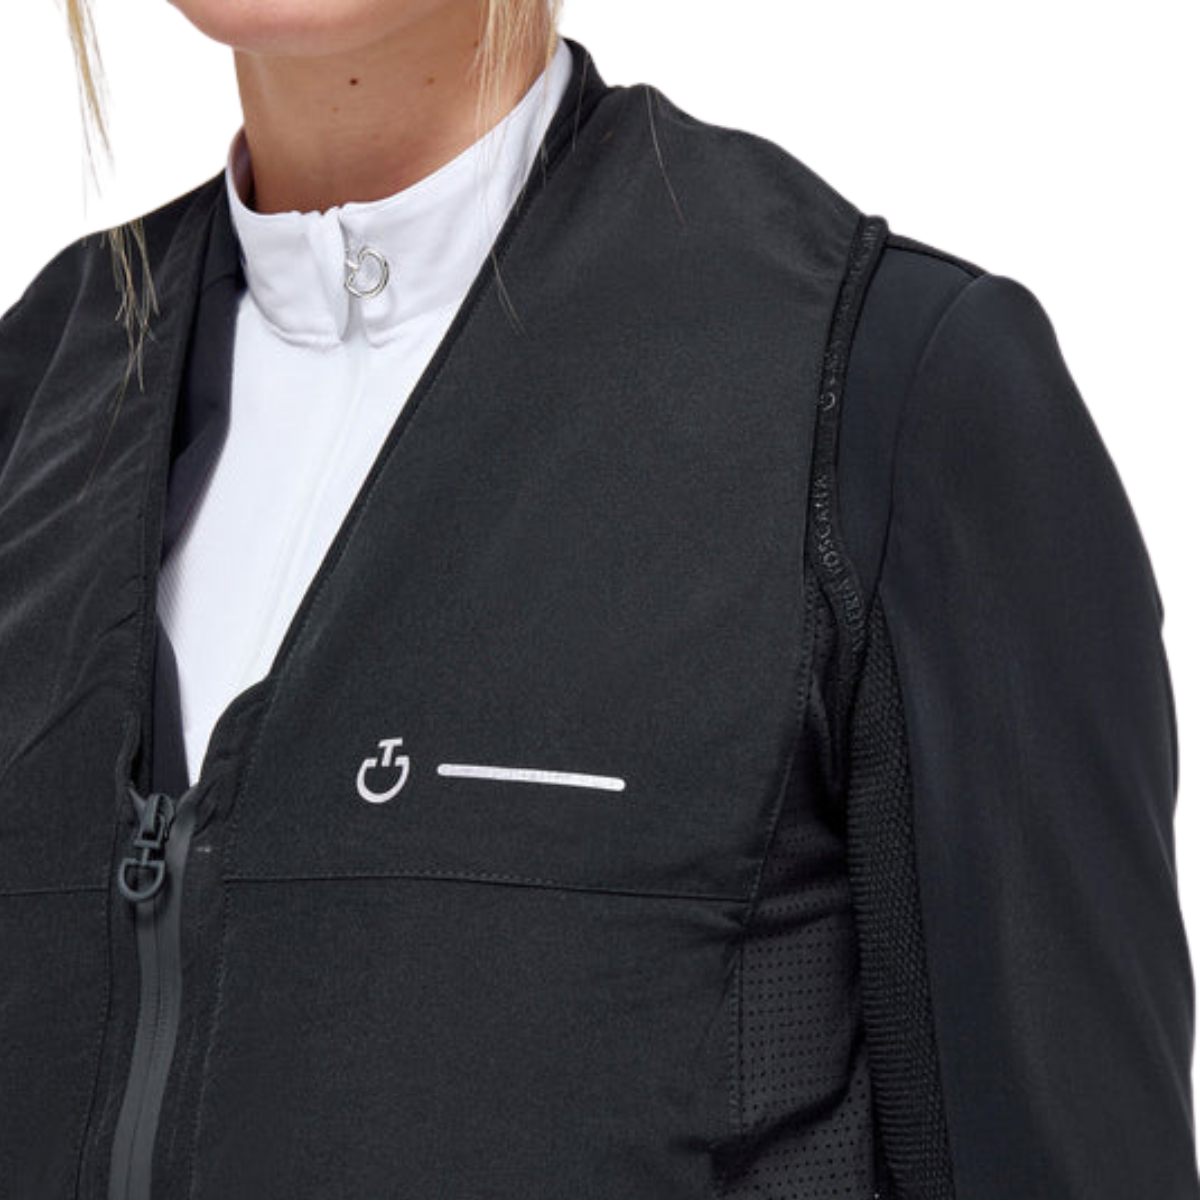 Cavalleria Toscana 'R-Evo' Air Vest in Black 